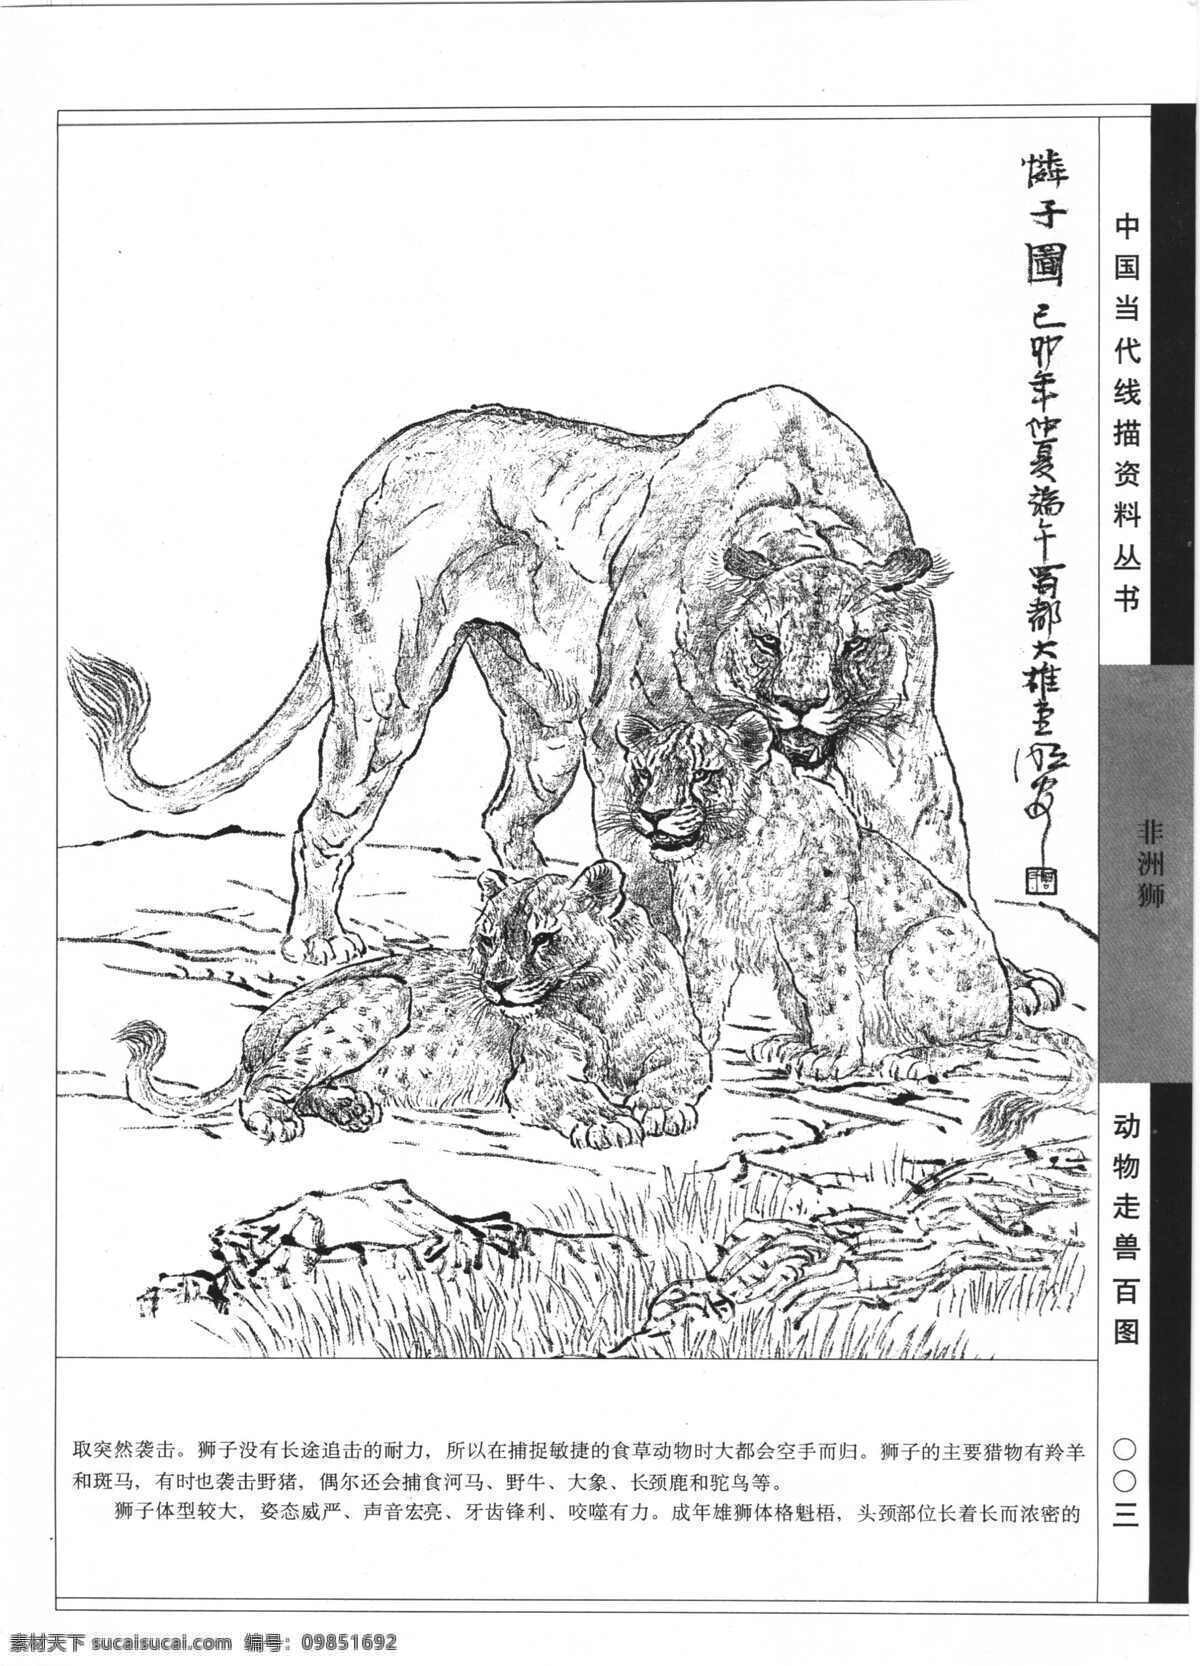 动物走兽百图 狮 动物 走兽 百兽 线描 白描 黑白稿 线描动物 老虎 狮子 豹 象 百 图 线 描图 绘画书法 文化艺术